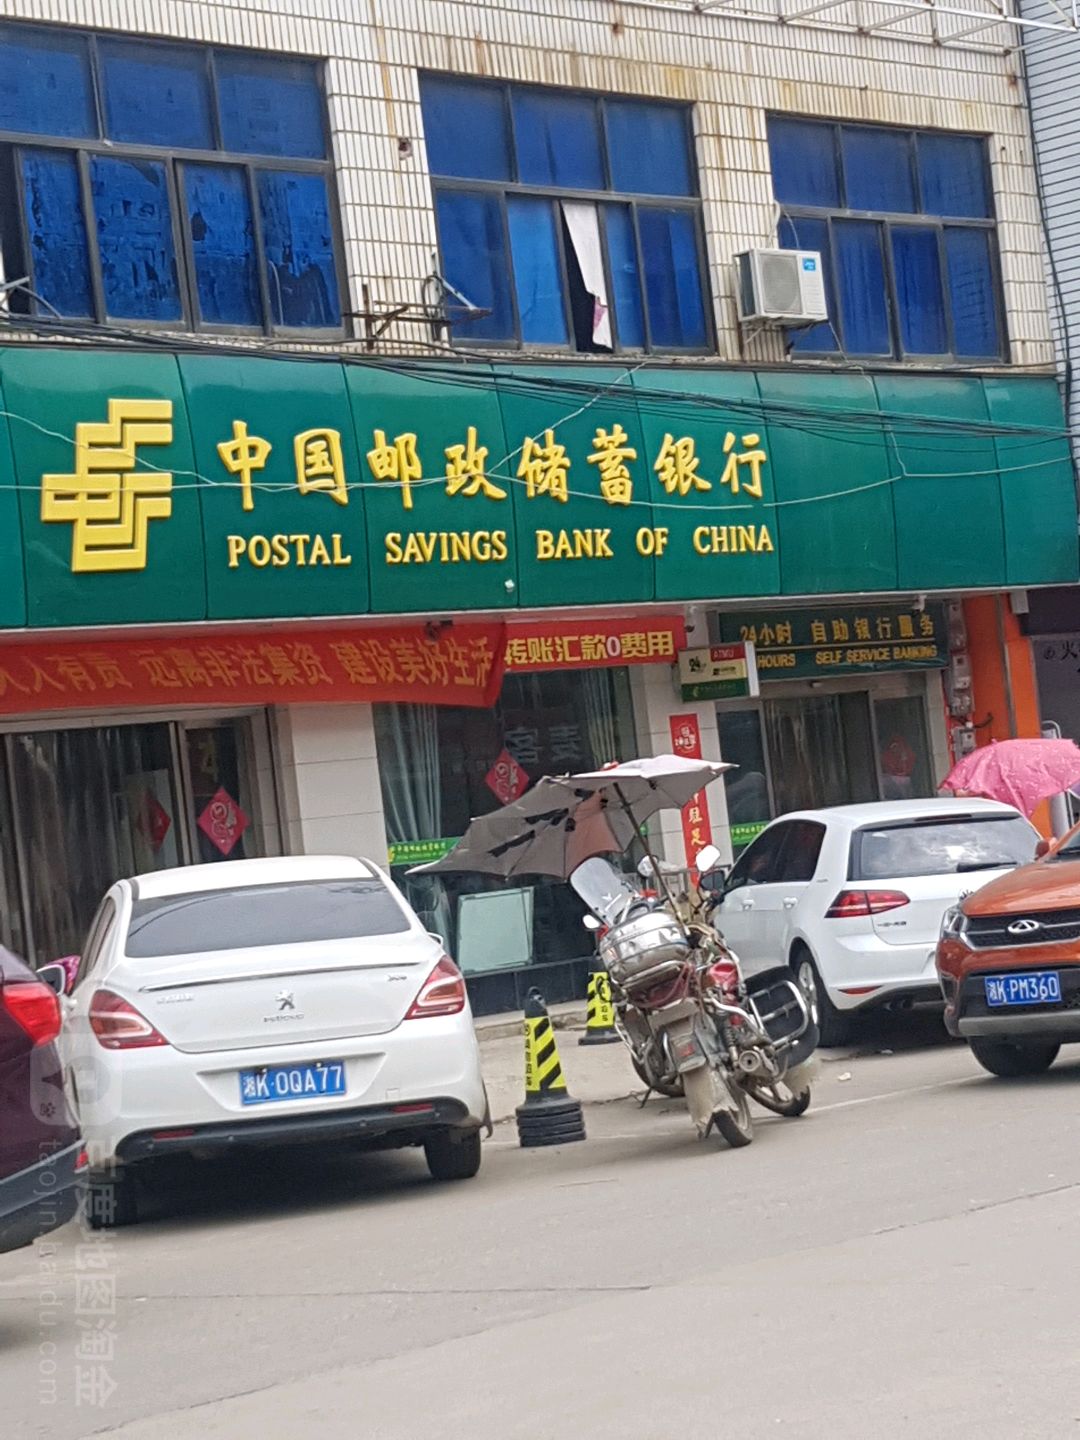 中國郵政儲蓄銀行24小時自助銀行(橋頭河支行)